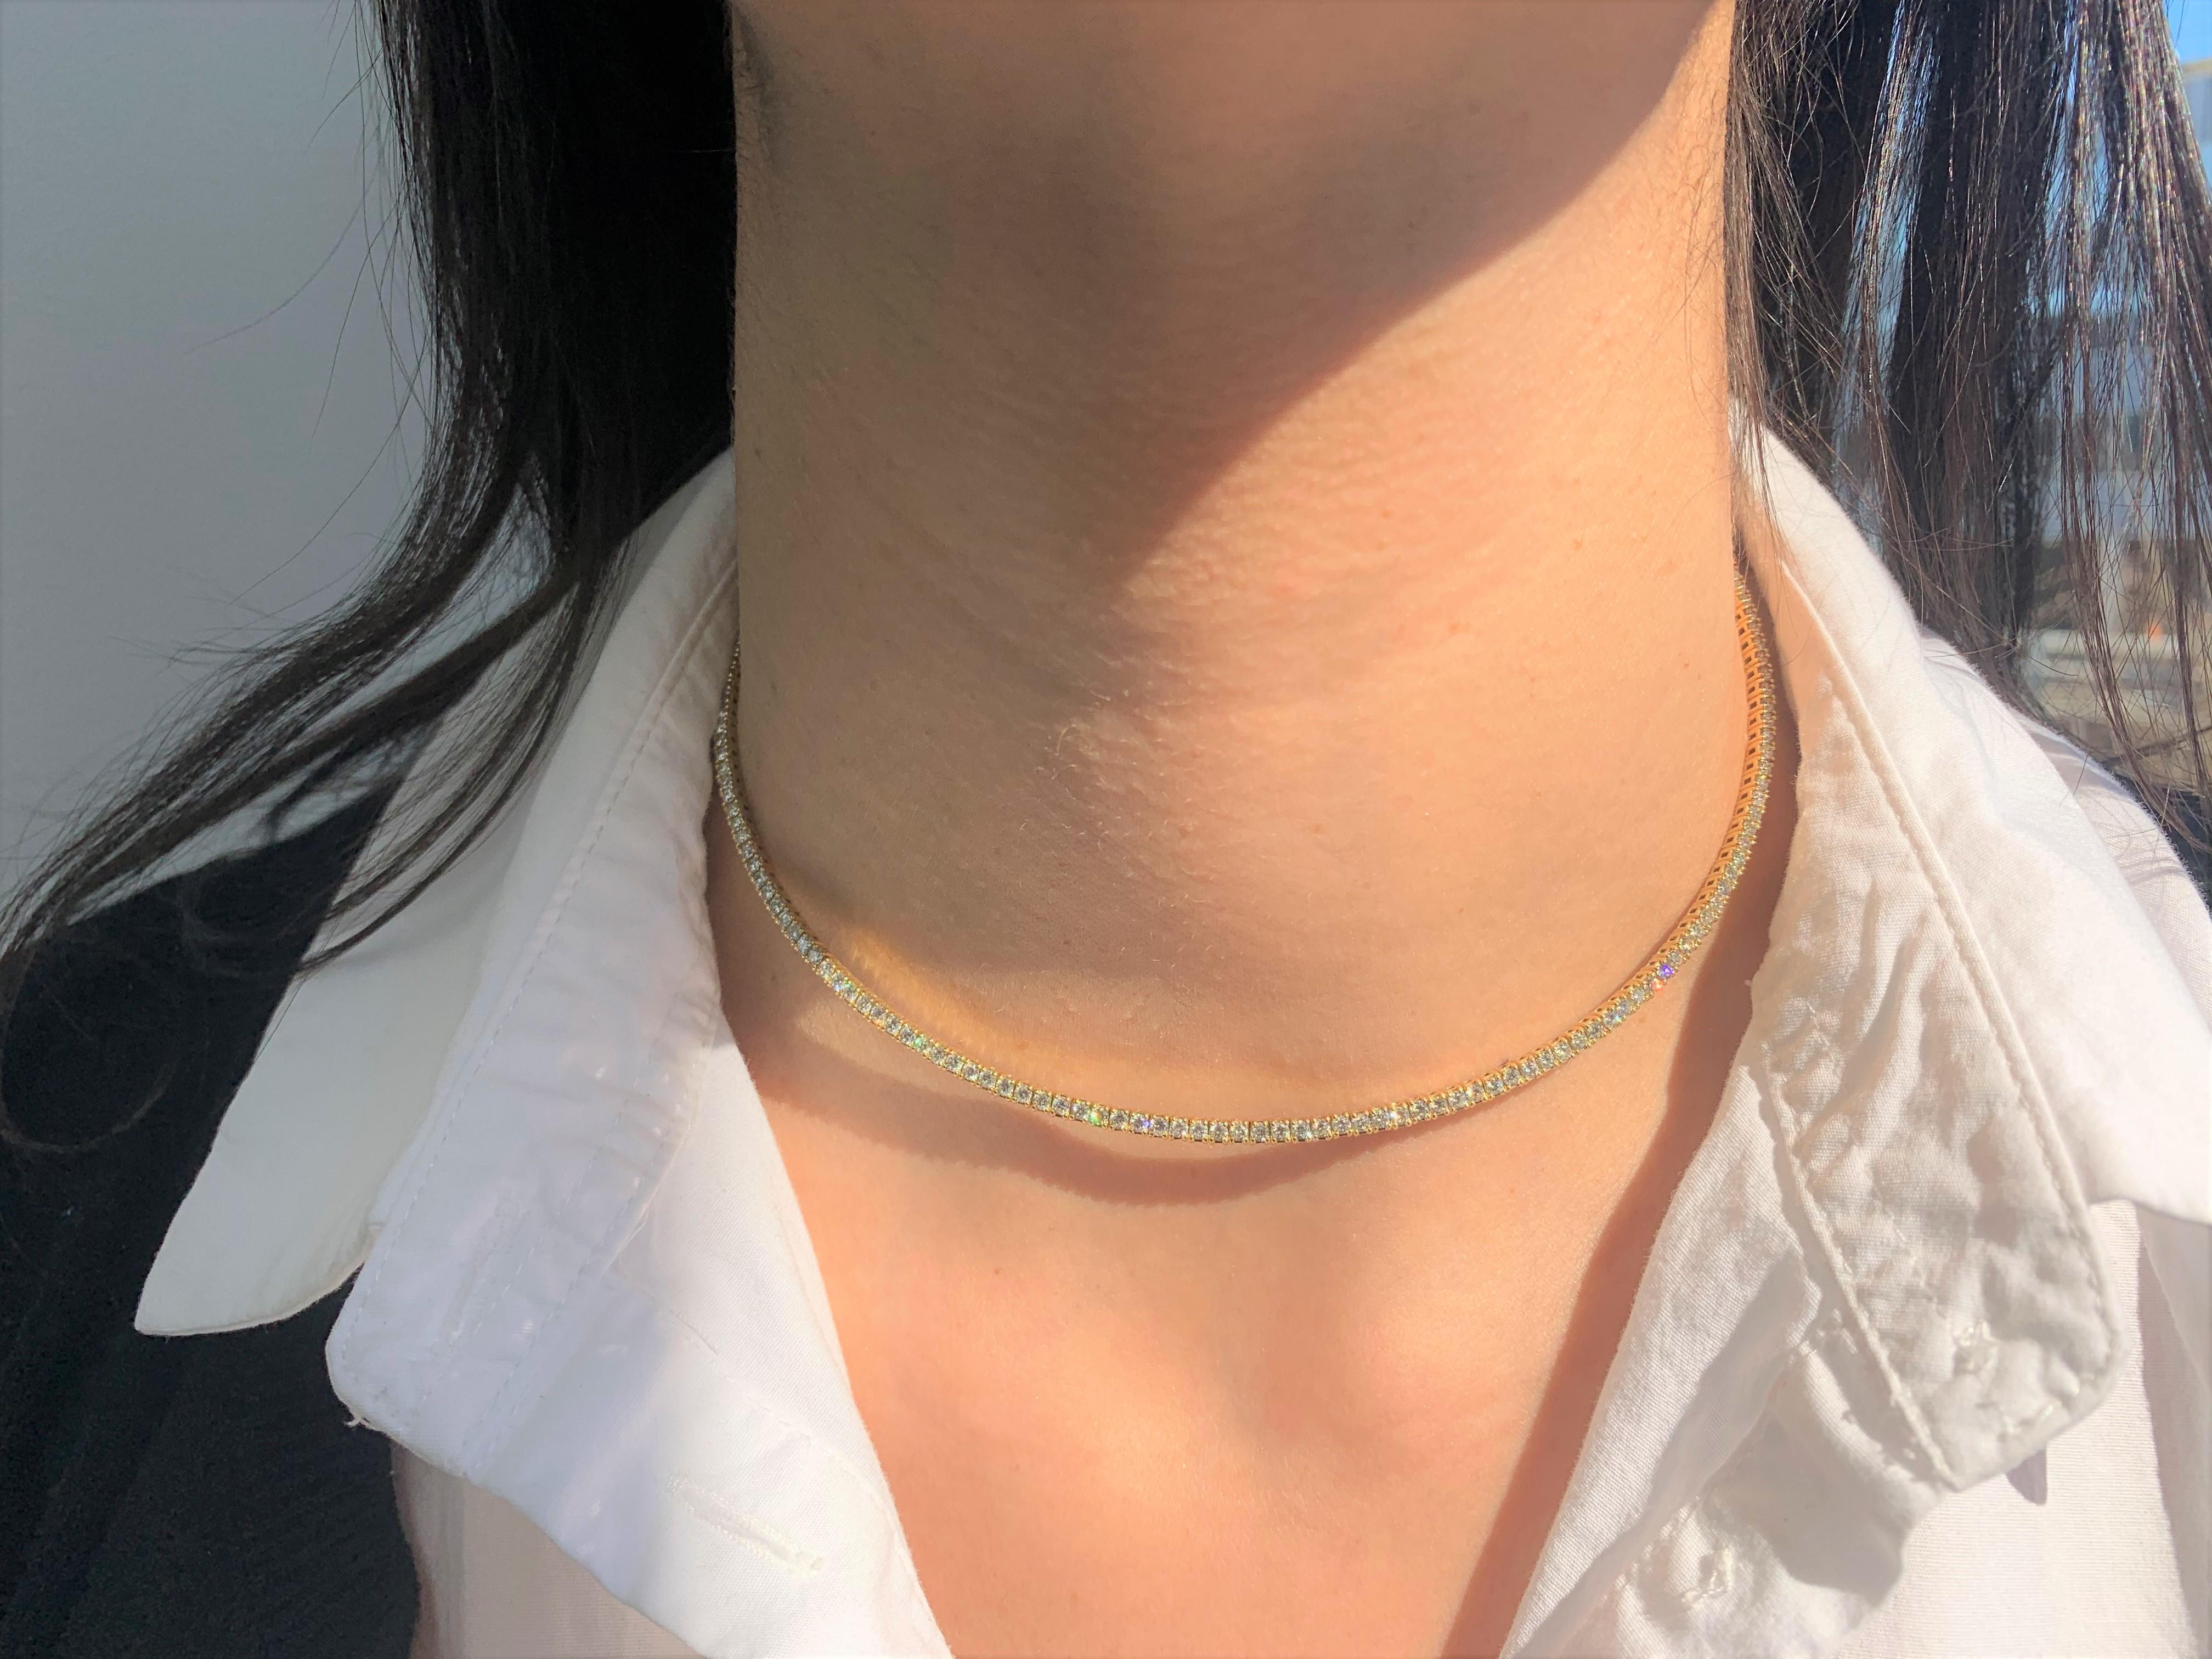 Dies ist ein Beautfiul Diamond Choker Kragen Halskette, die für Komfort einstellbar ist. Gefertigt aus 14K Weißgold mit 136 natürlichen runden Diamanten mit einem Gewicht von 3,56 Karat 100mm Länge. Klauenverschluss
-18K Weißgold
-136 natürliche